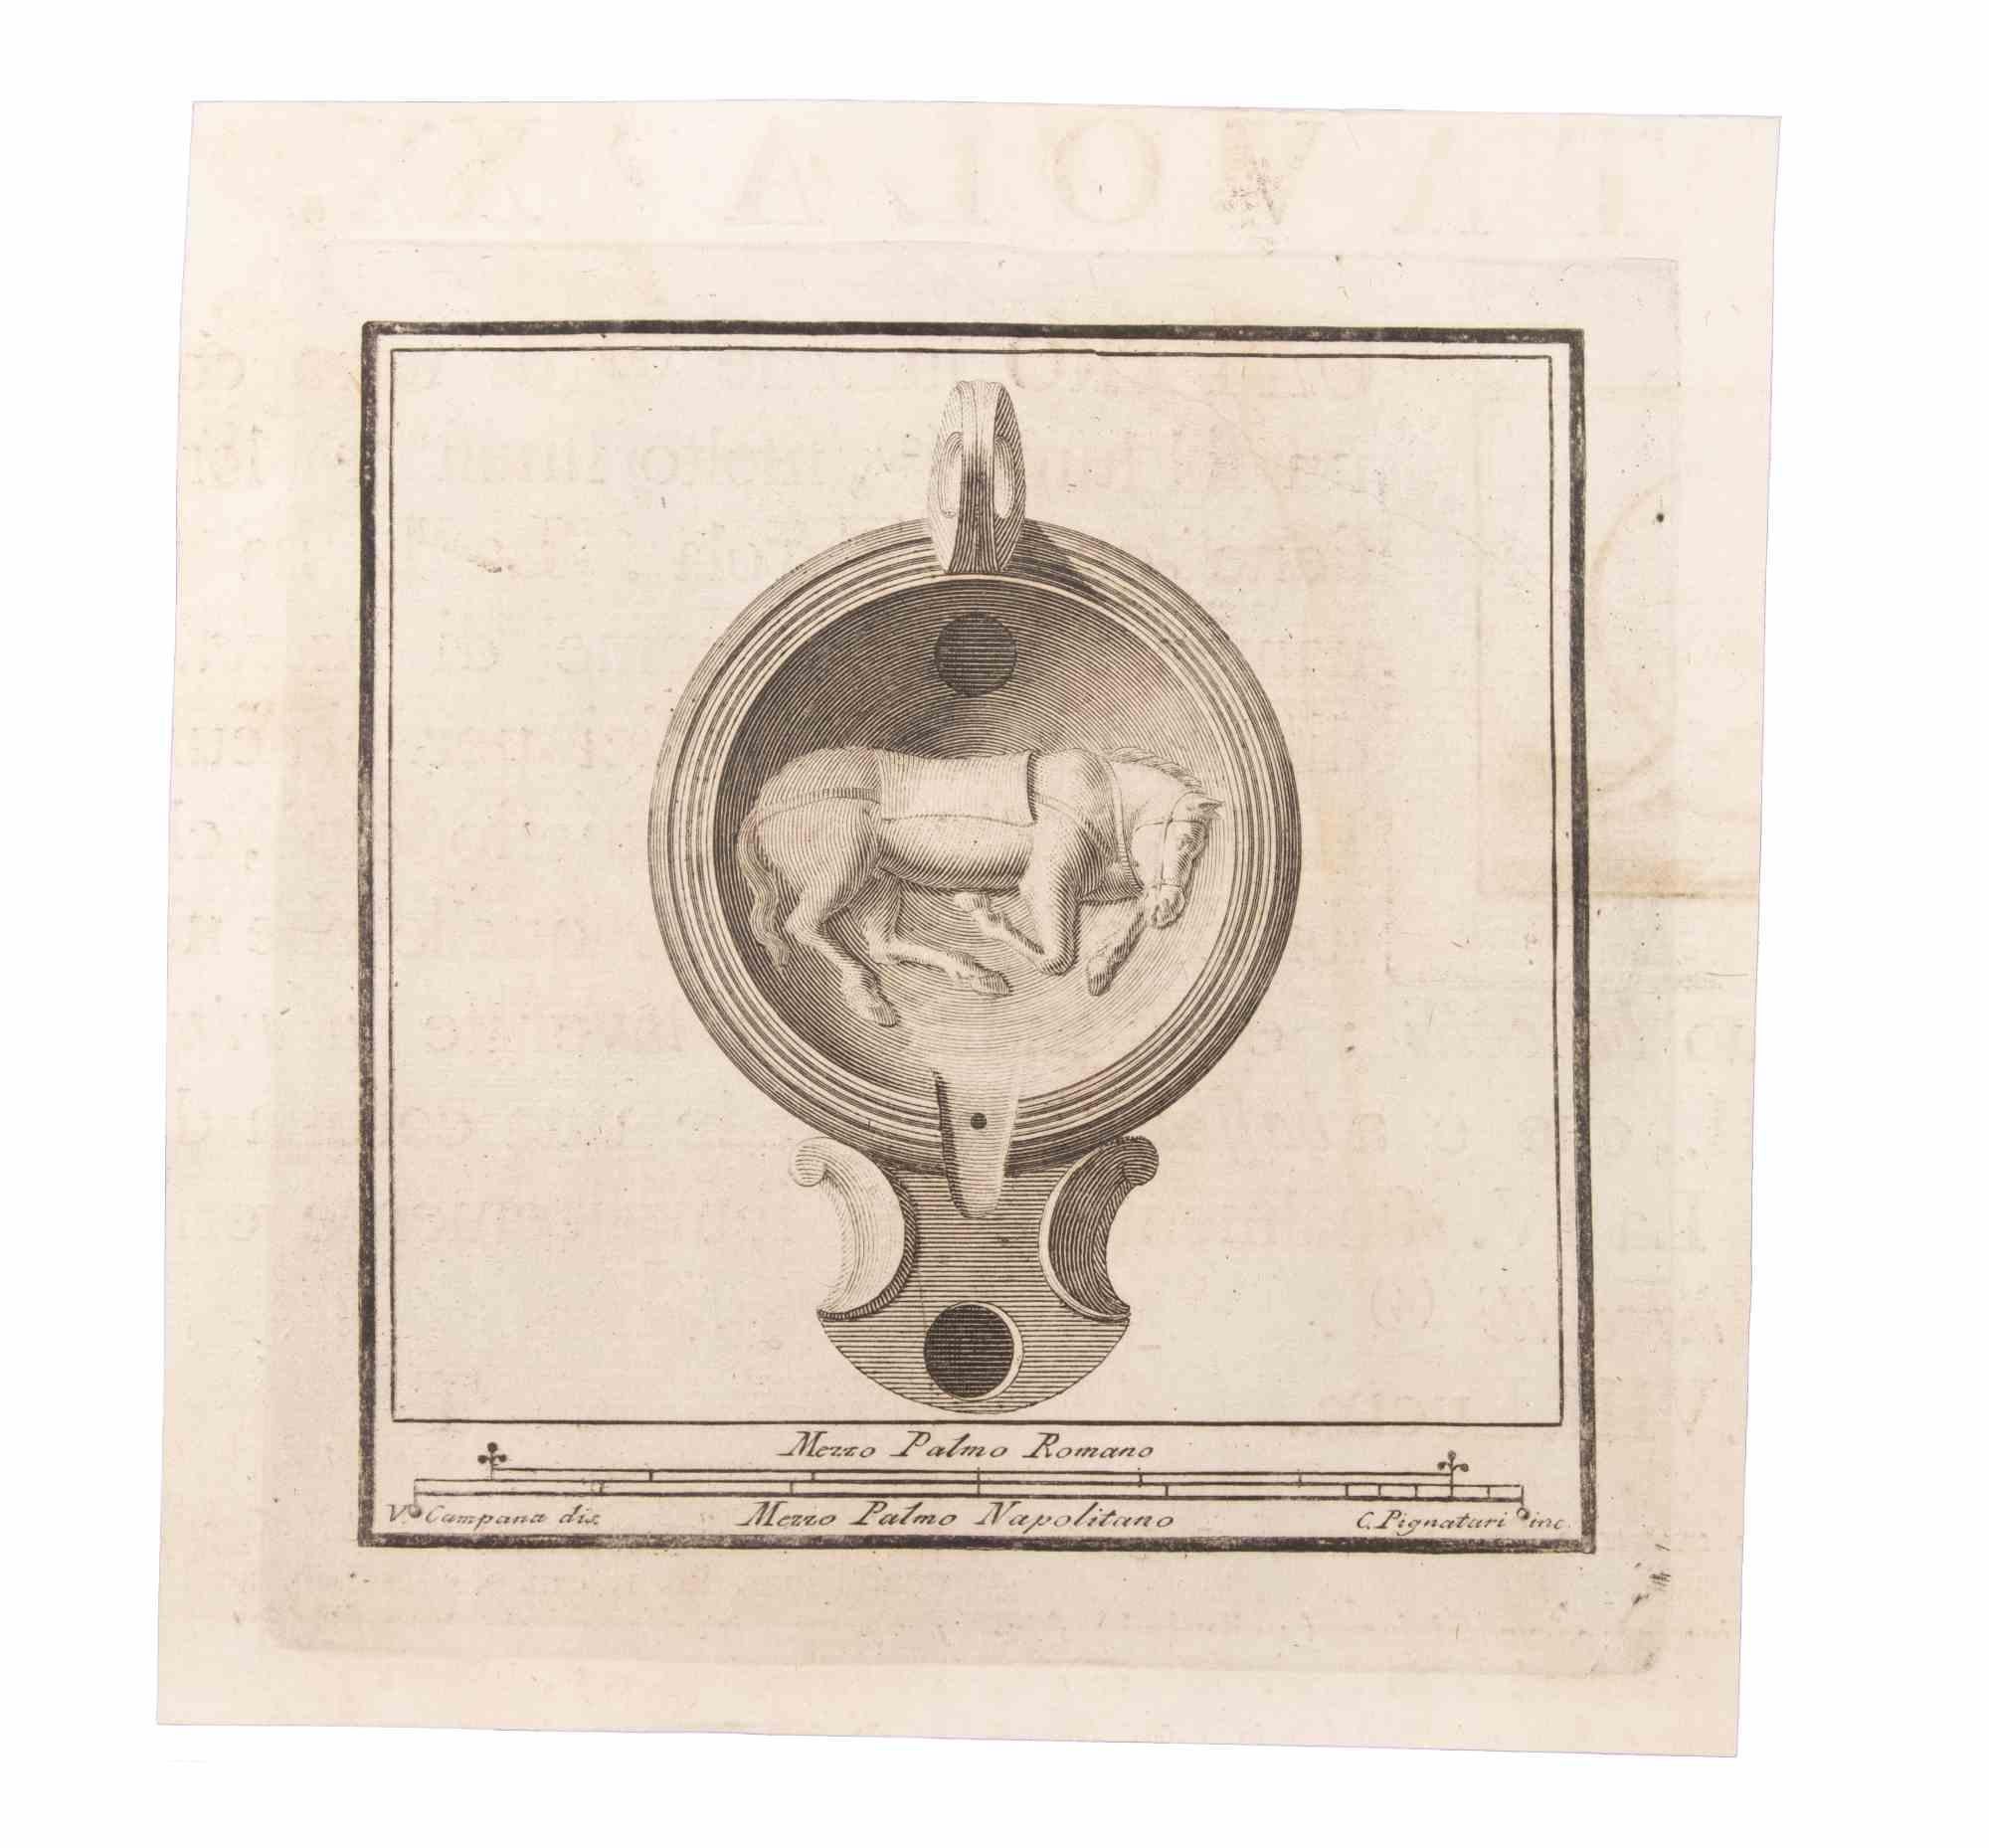 Lampe à huile avec cheval est une gravure réalisée par Carlo Pignatari (18ème siècle).

La gravure appartient à la suite d'estampes "Antiquités d'Herculanum exposées" (titre original : "Le Antichità di Ercolano Esposte"), un volume de huit gravures